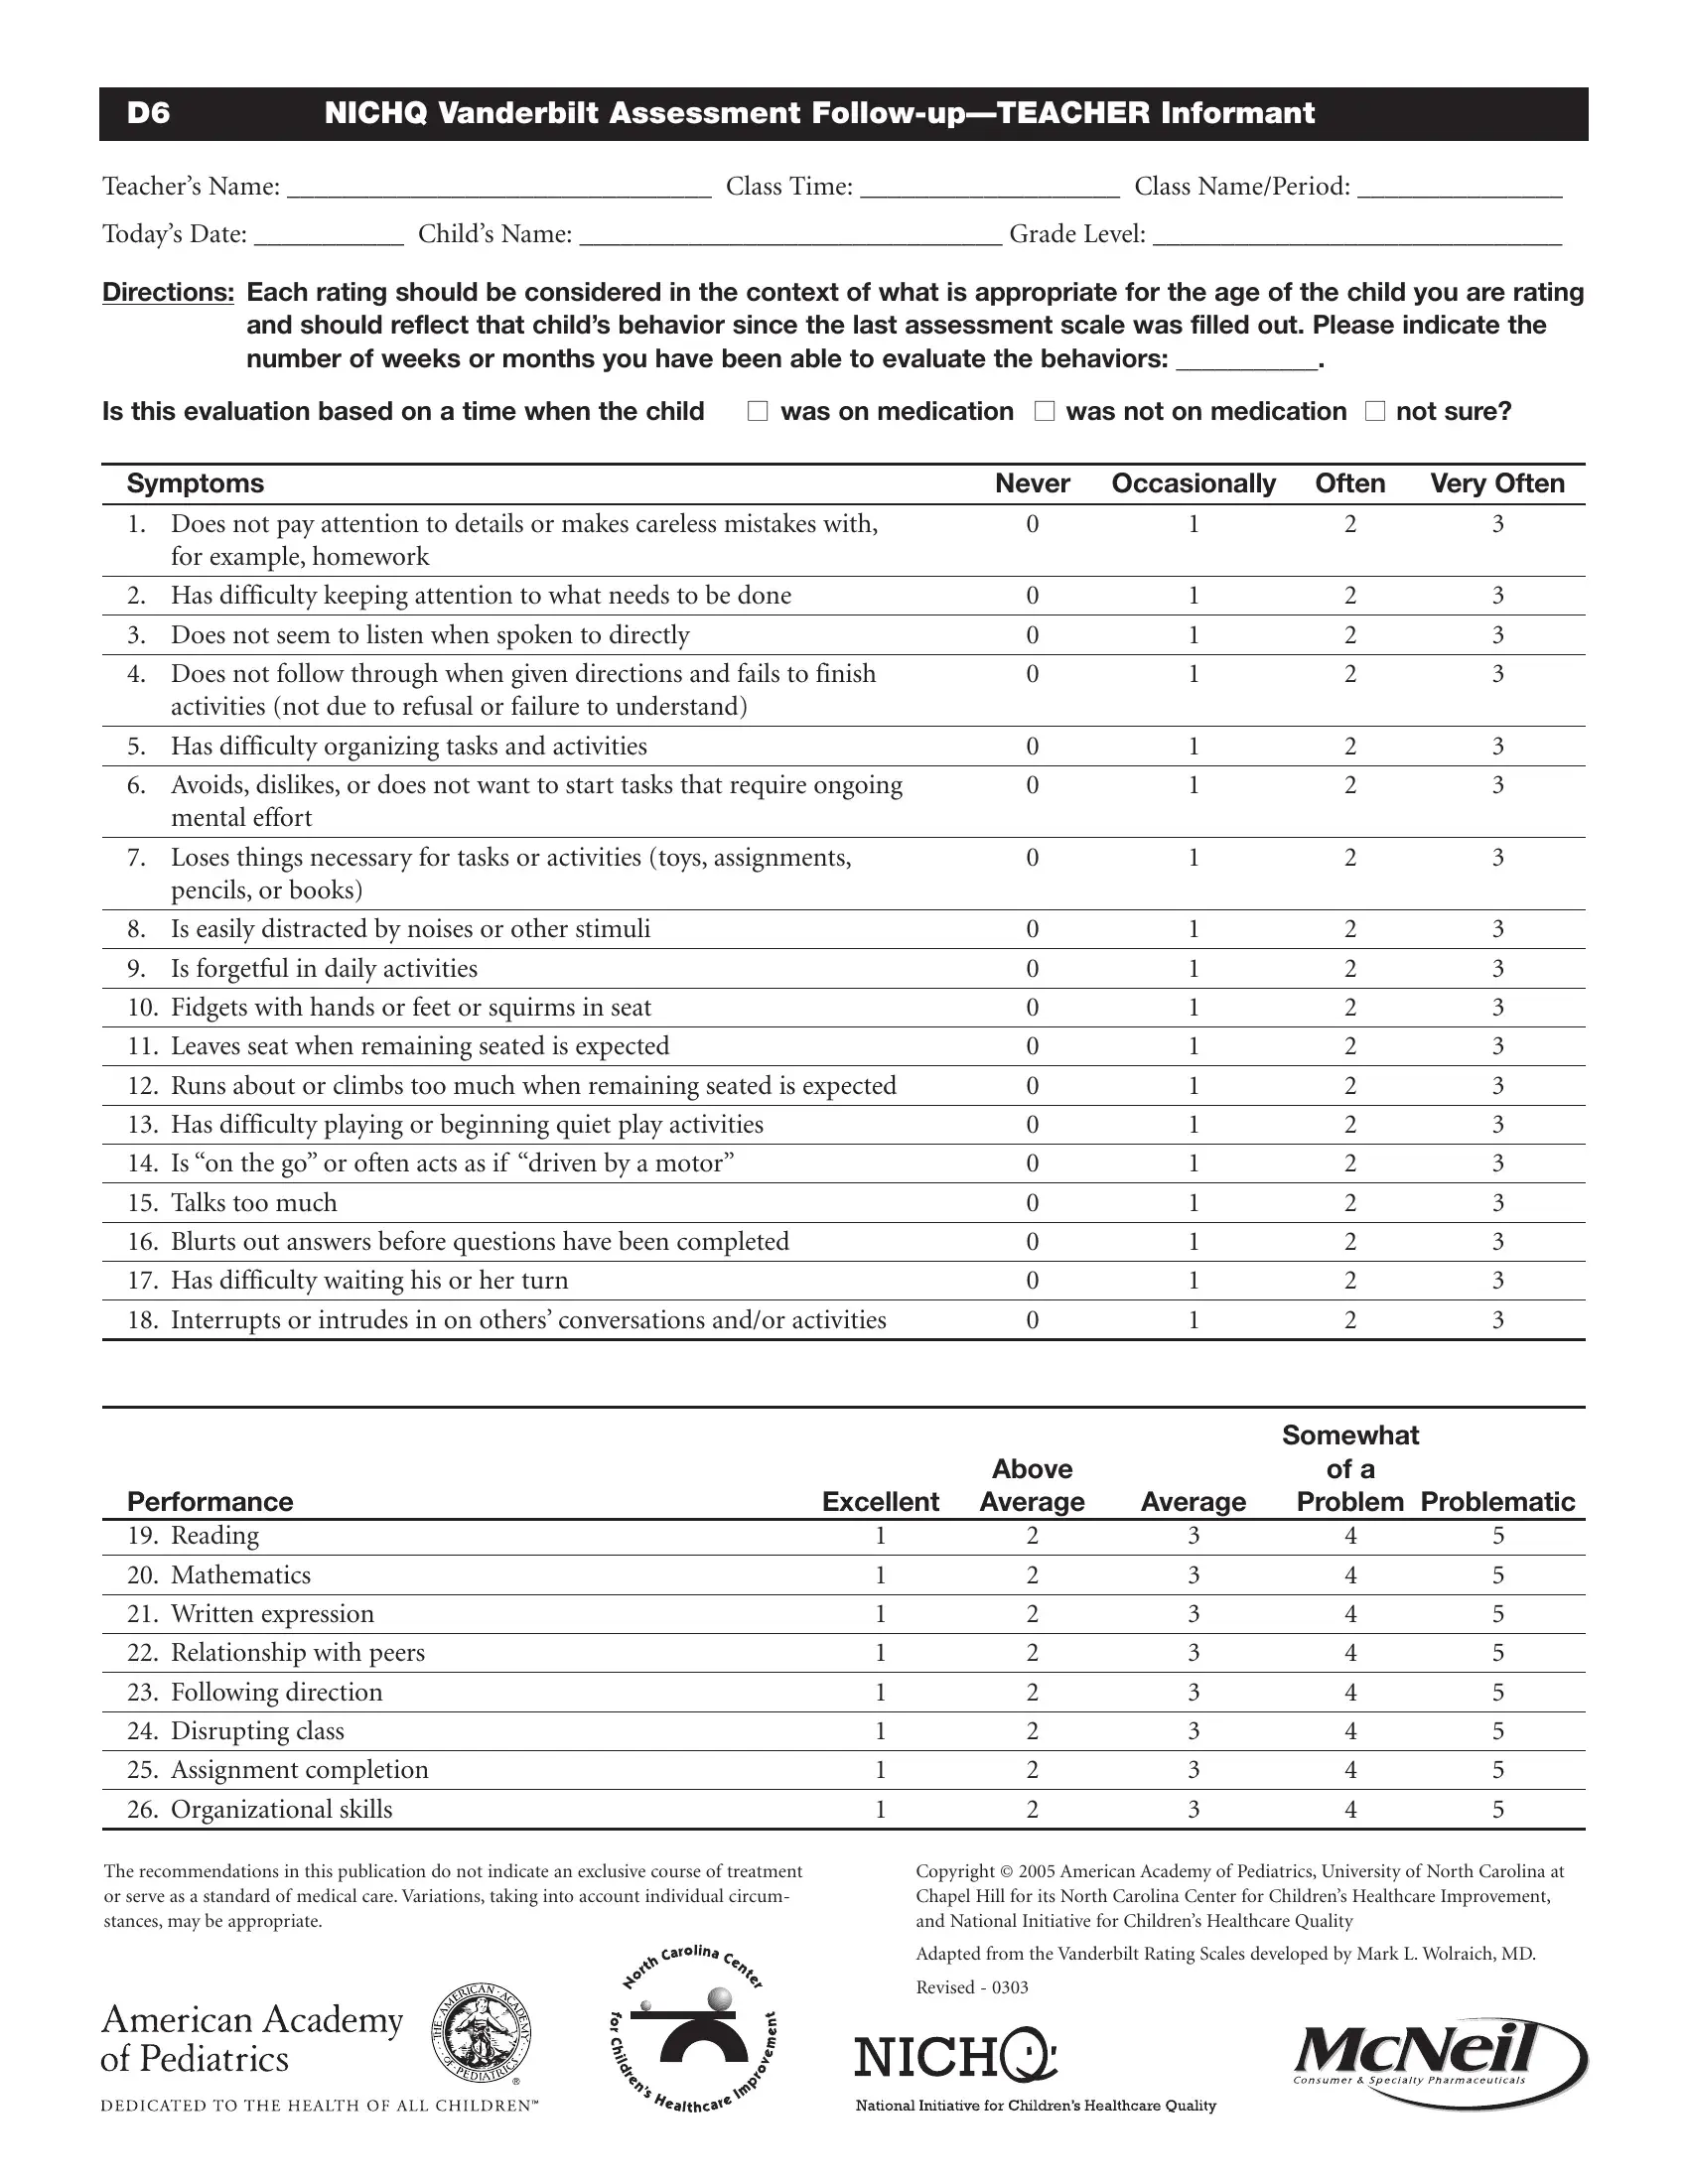 Vanderbilt Assessment Form Fill Out Printable PDF Forms Online